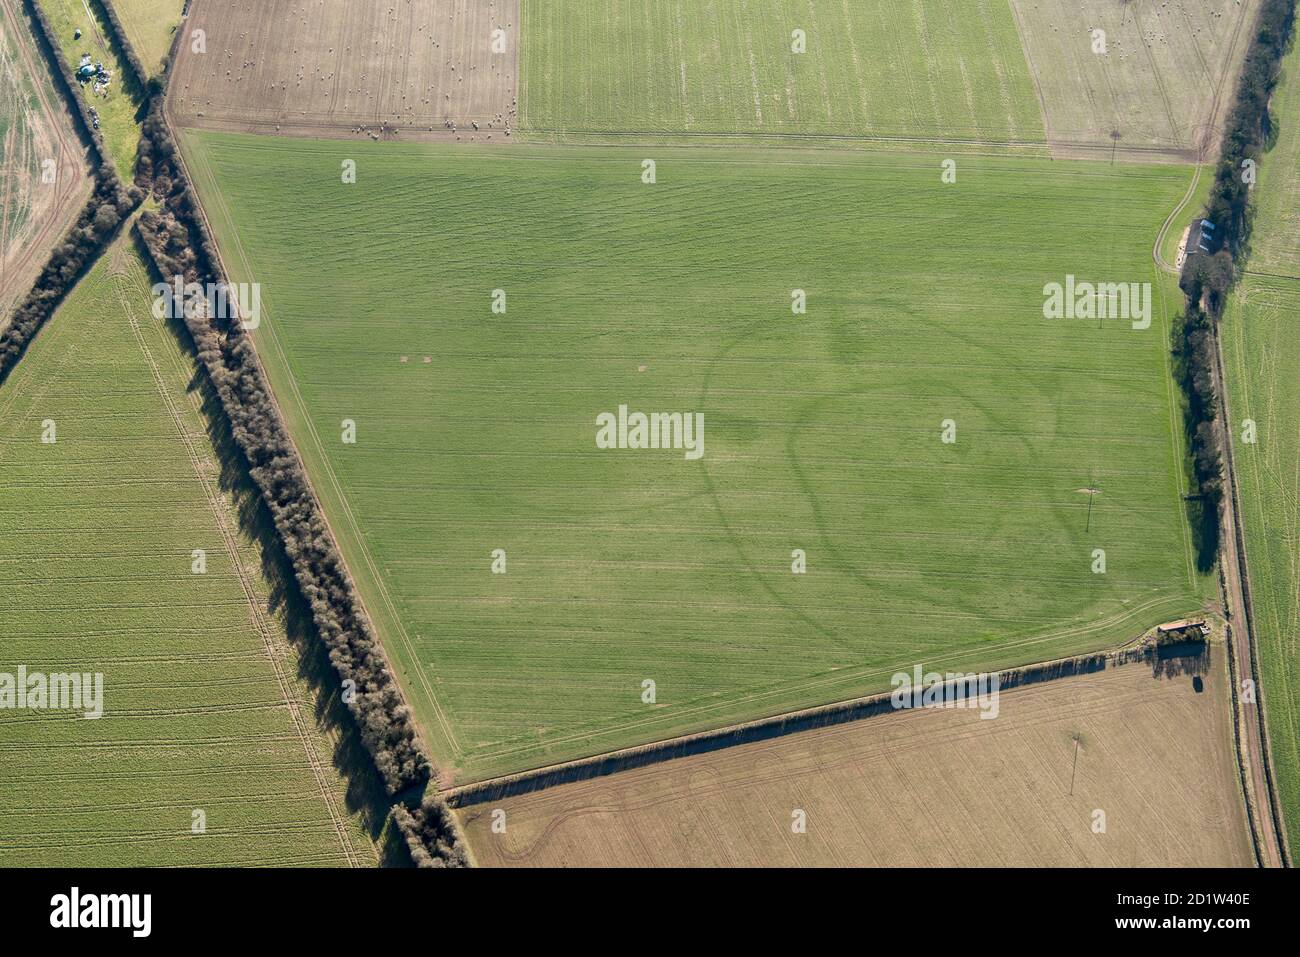 Marque de récolte de l'enceinte à double point de piqué Iron Age, près de South Wondston, Hampshire 2018. Vue aérienne. Banque D'Images